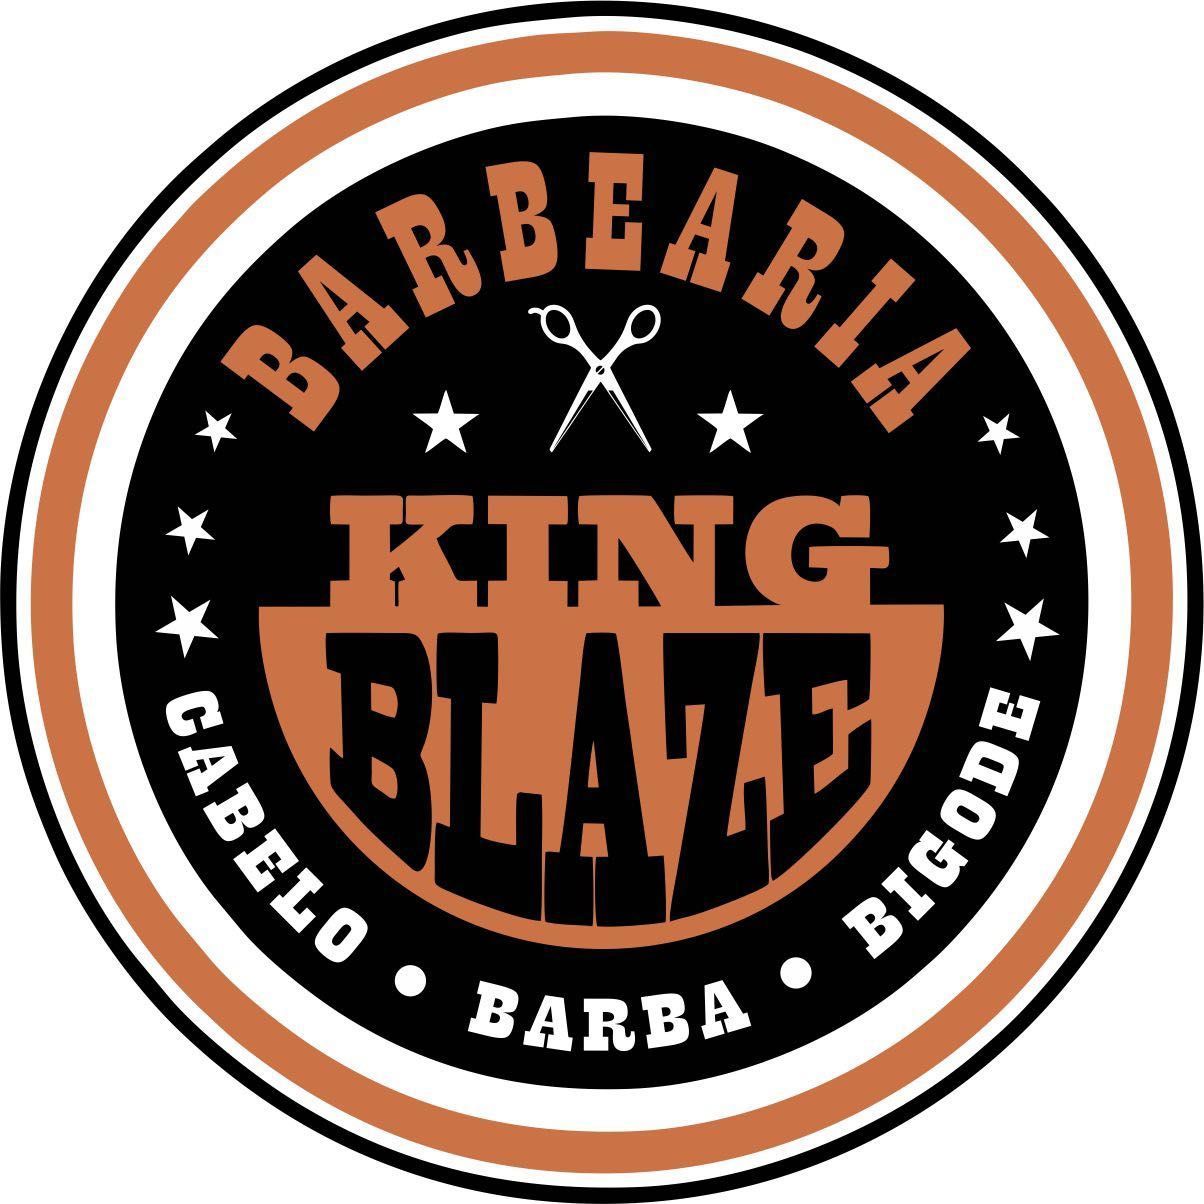 Barbearia king Blaze, Rua João Guilherme de Brito, 28, Barbe 🏀, 04773-230, São Paulo